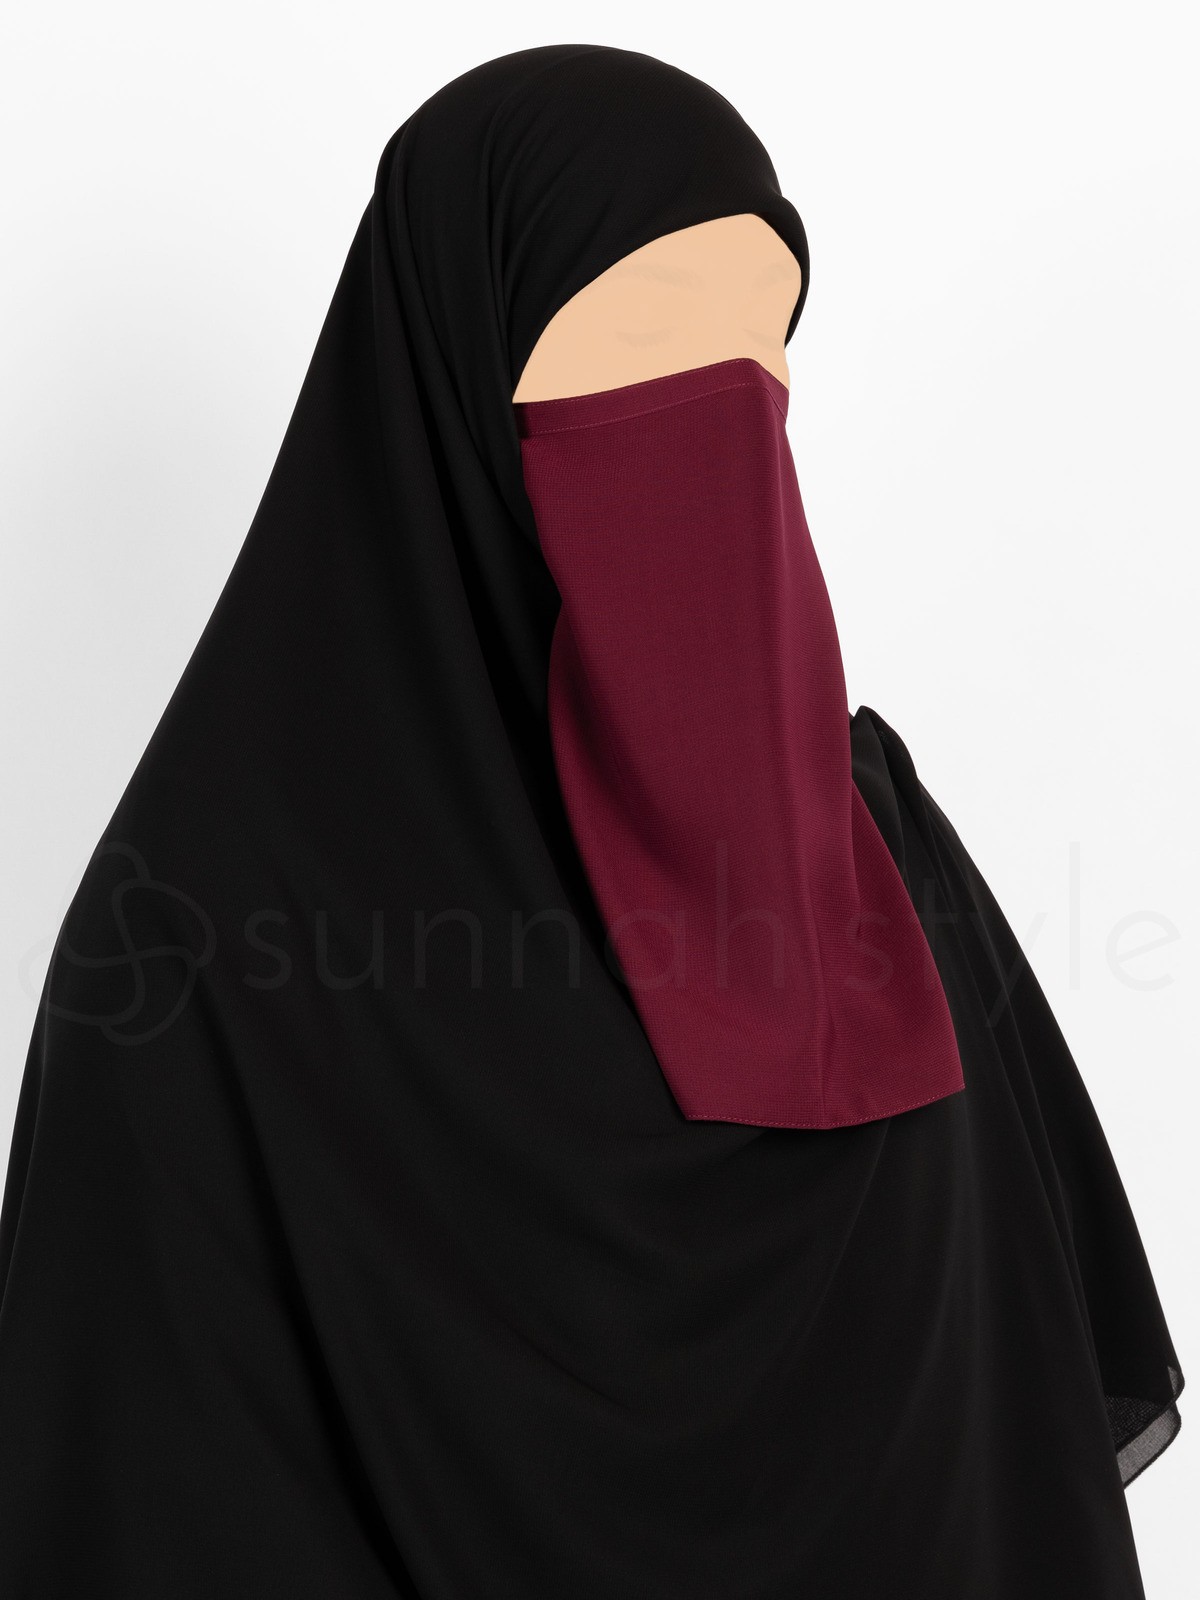 Sunnah Style - Tying Half Niqab (Burgundy)